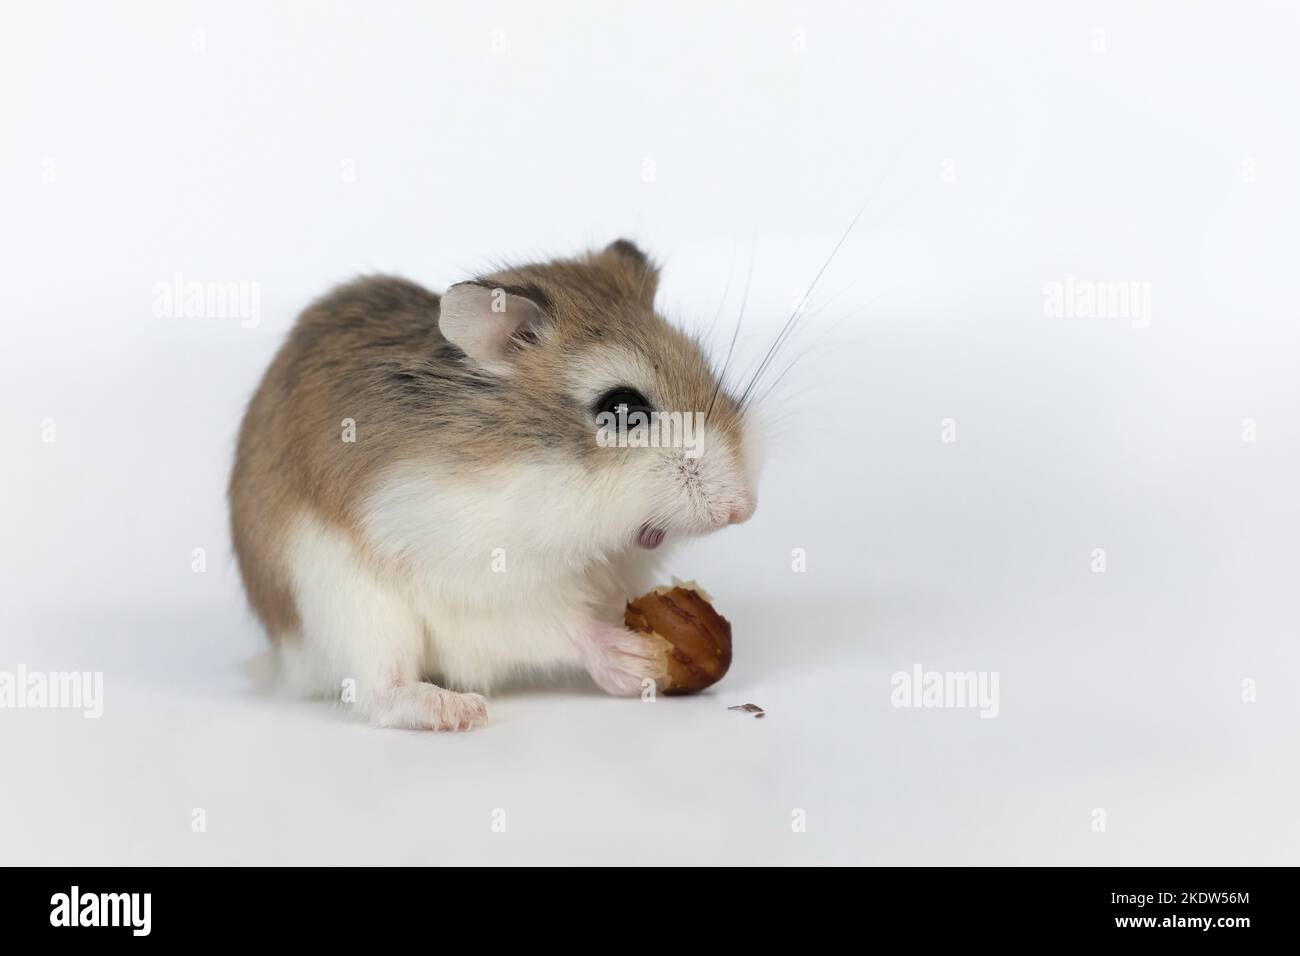 Roborovski hamster Stock Photo